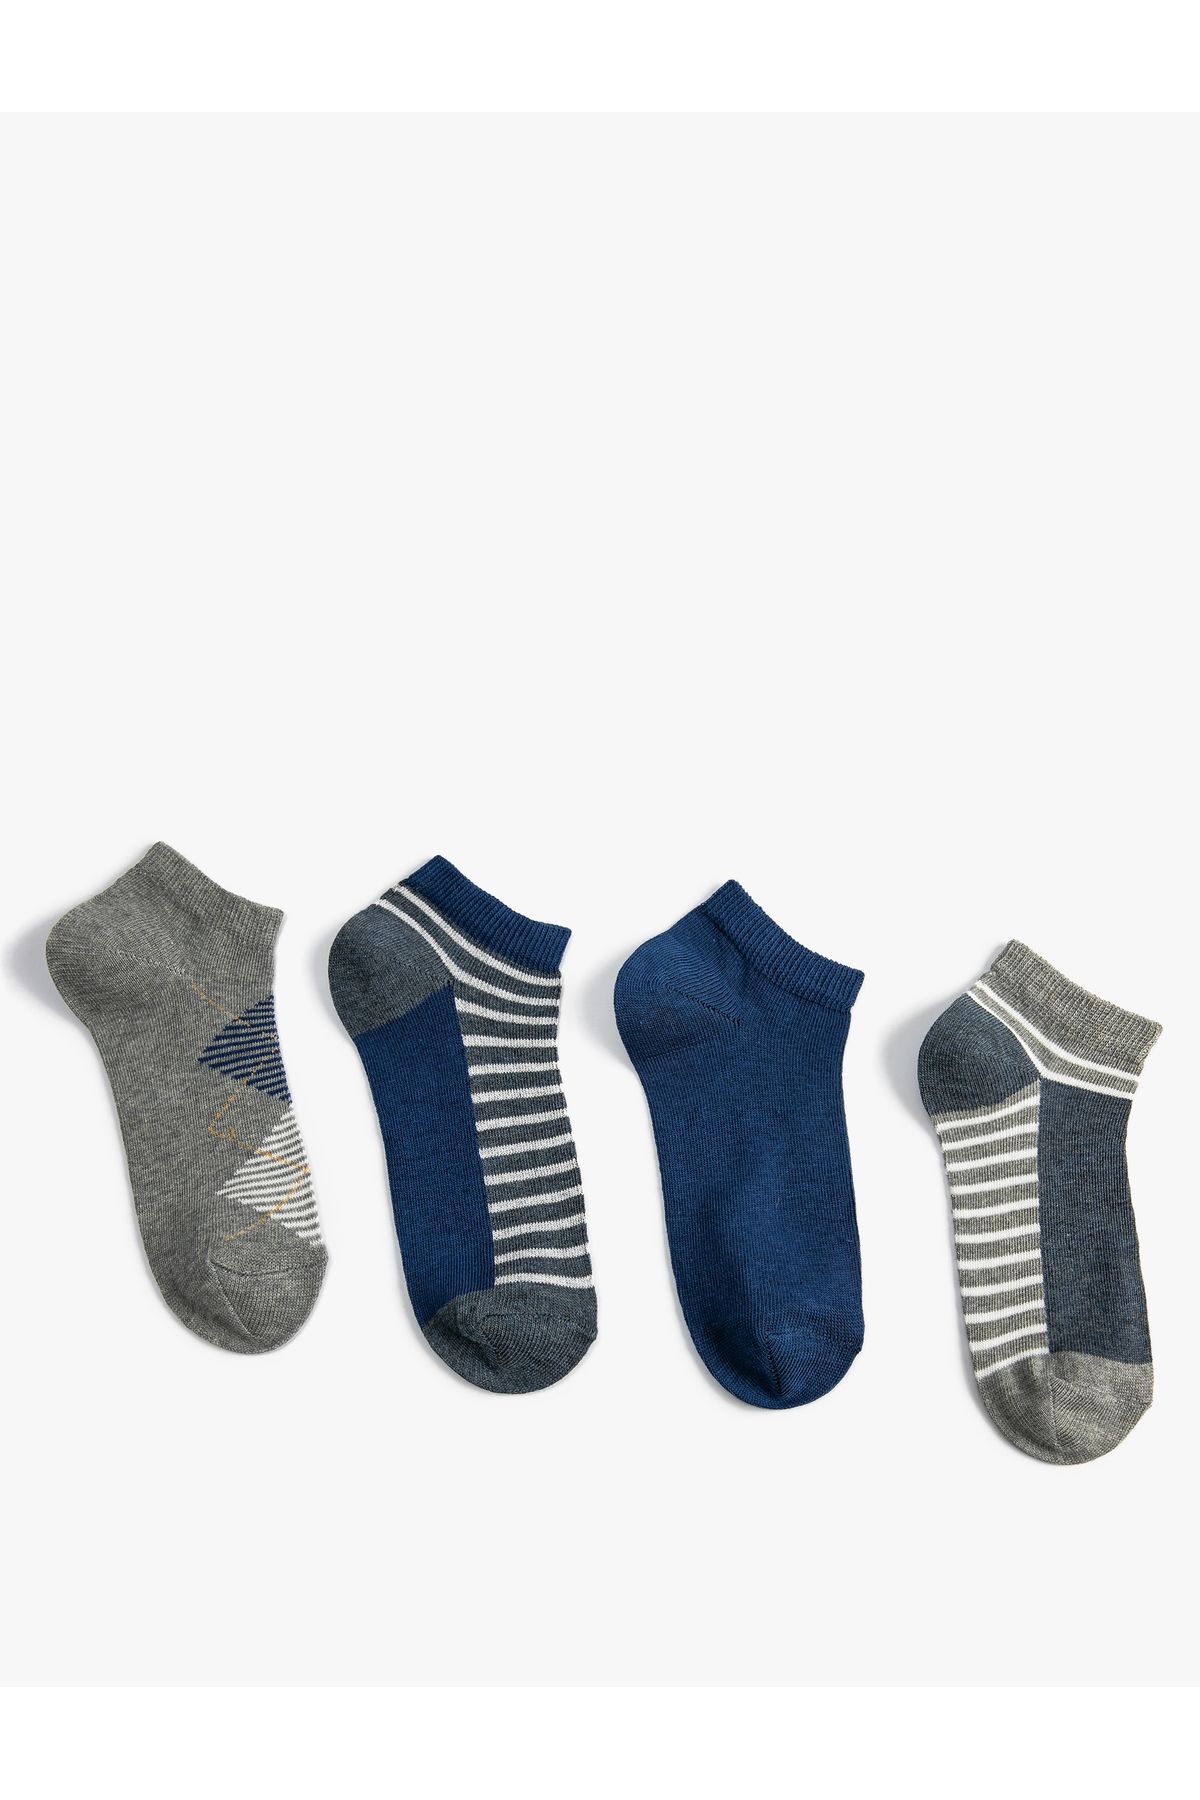 Koton 4'lü Basic Çorap Paketi